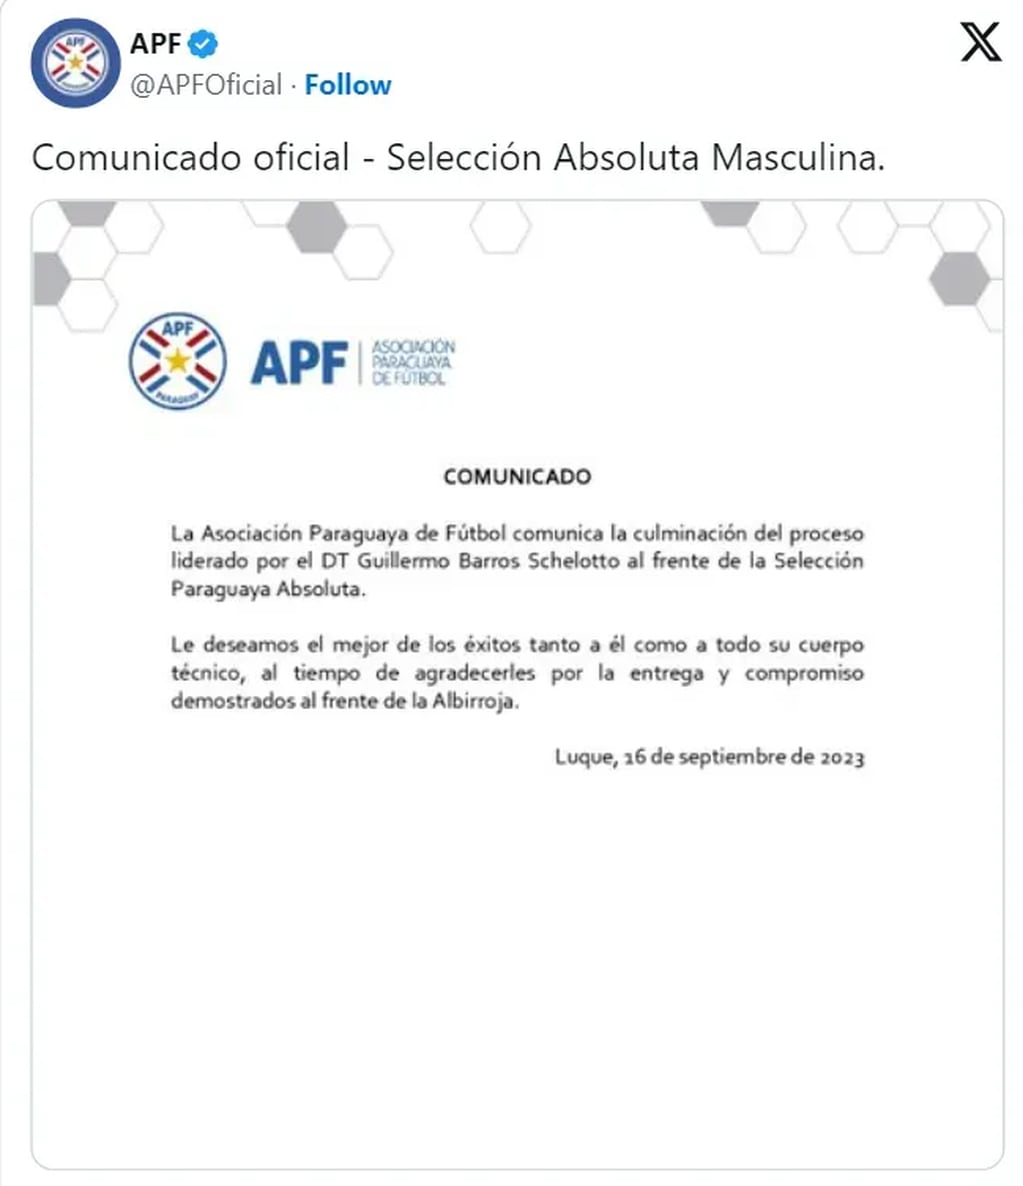 El comunicado de la Asociación paraguaya de fútbol